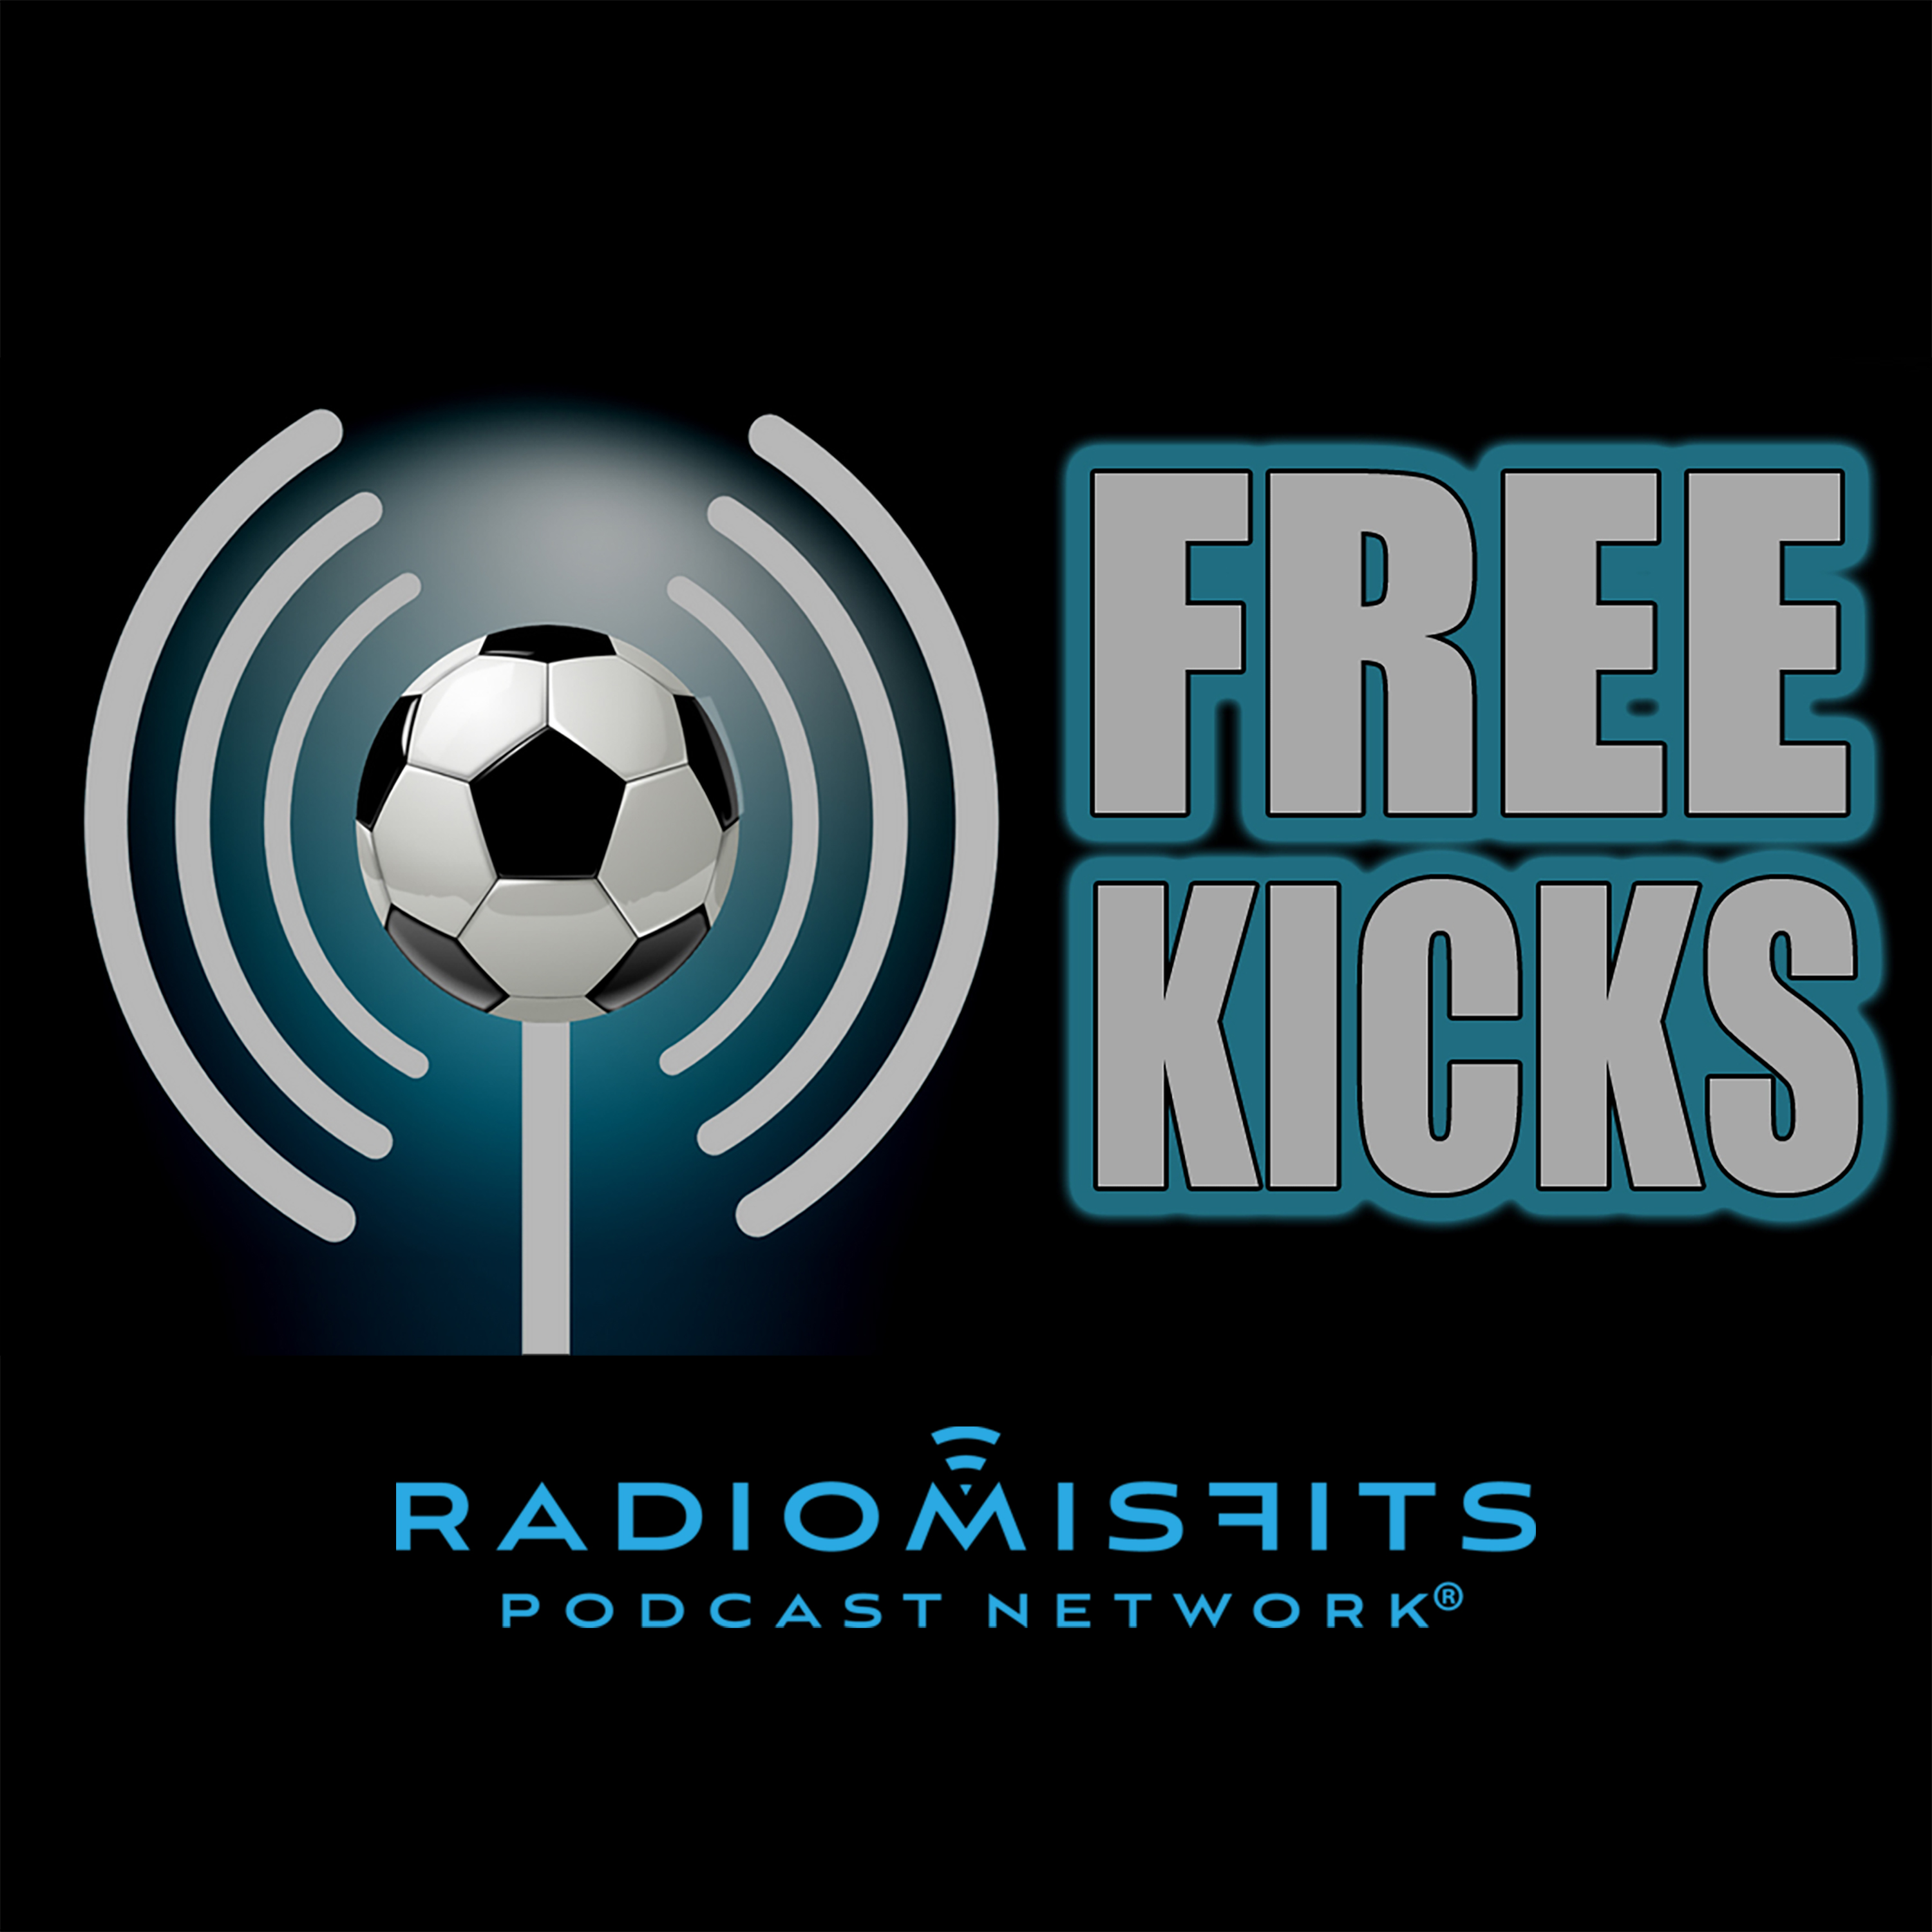 Free Kicks on Radio Misfits